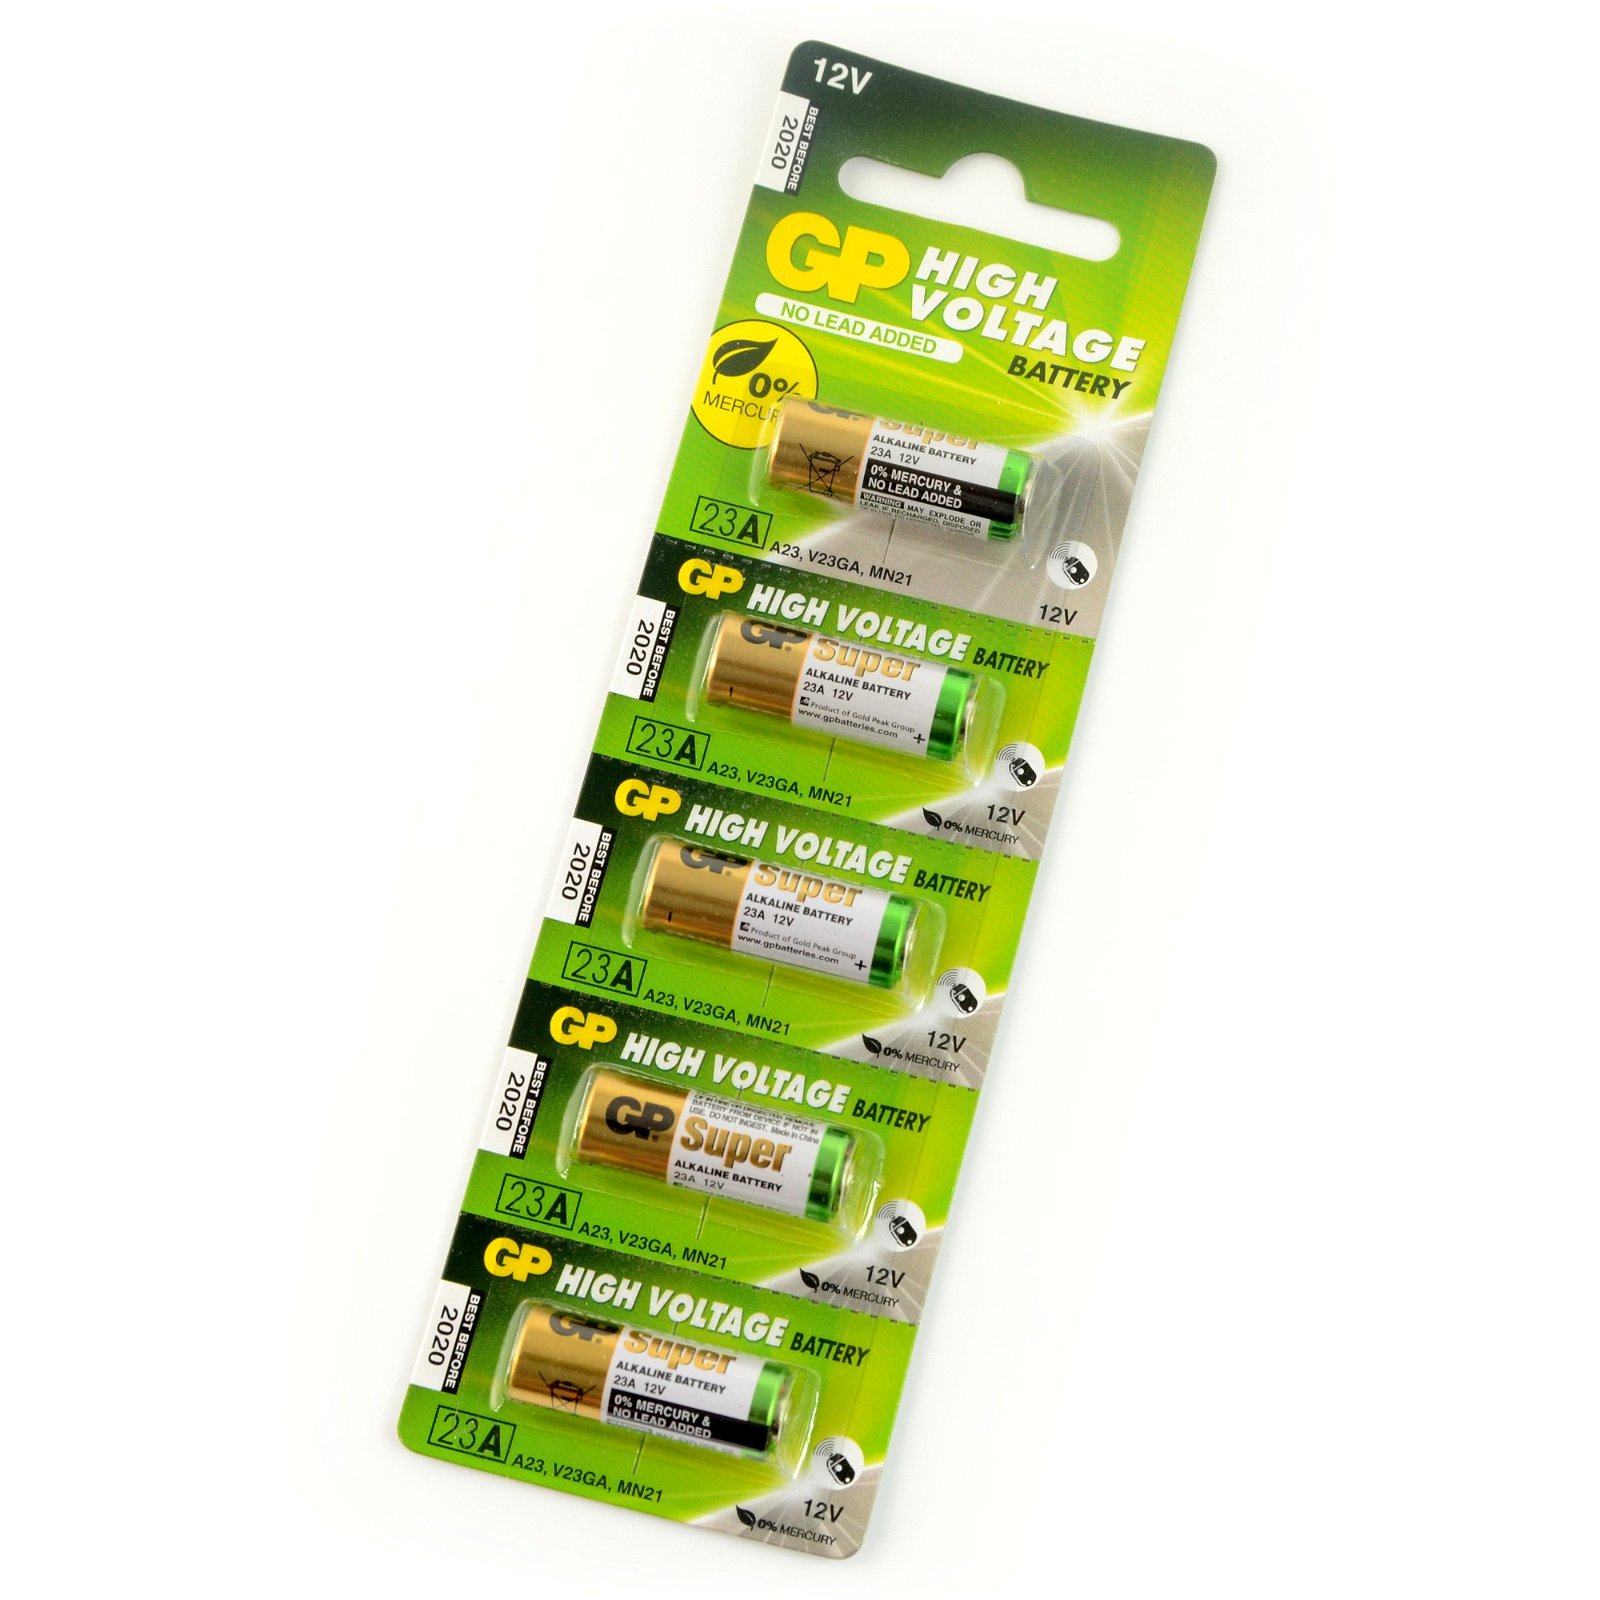 Simply Brands — Car Key Battery - 12V Alkaline (23A, A23, MN21, VR22, L1028)